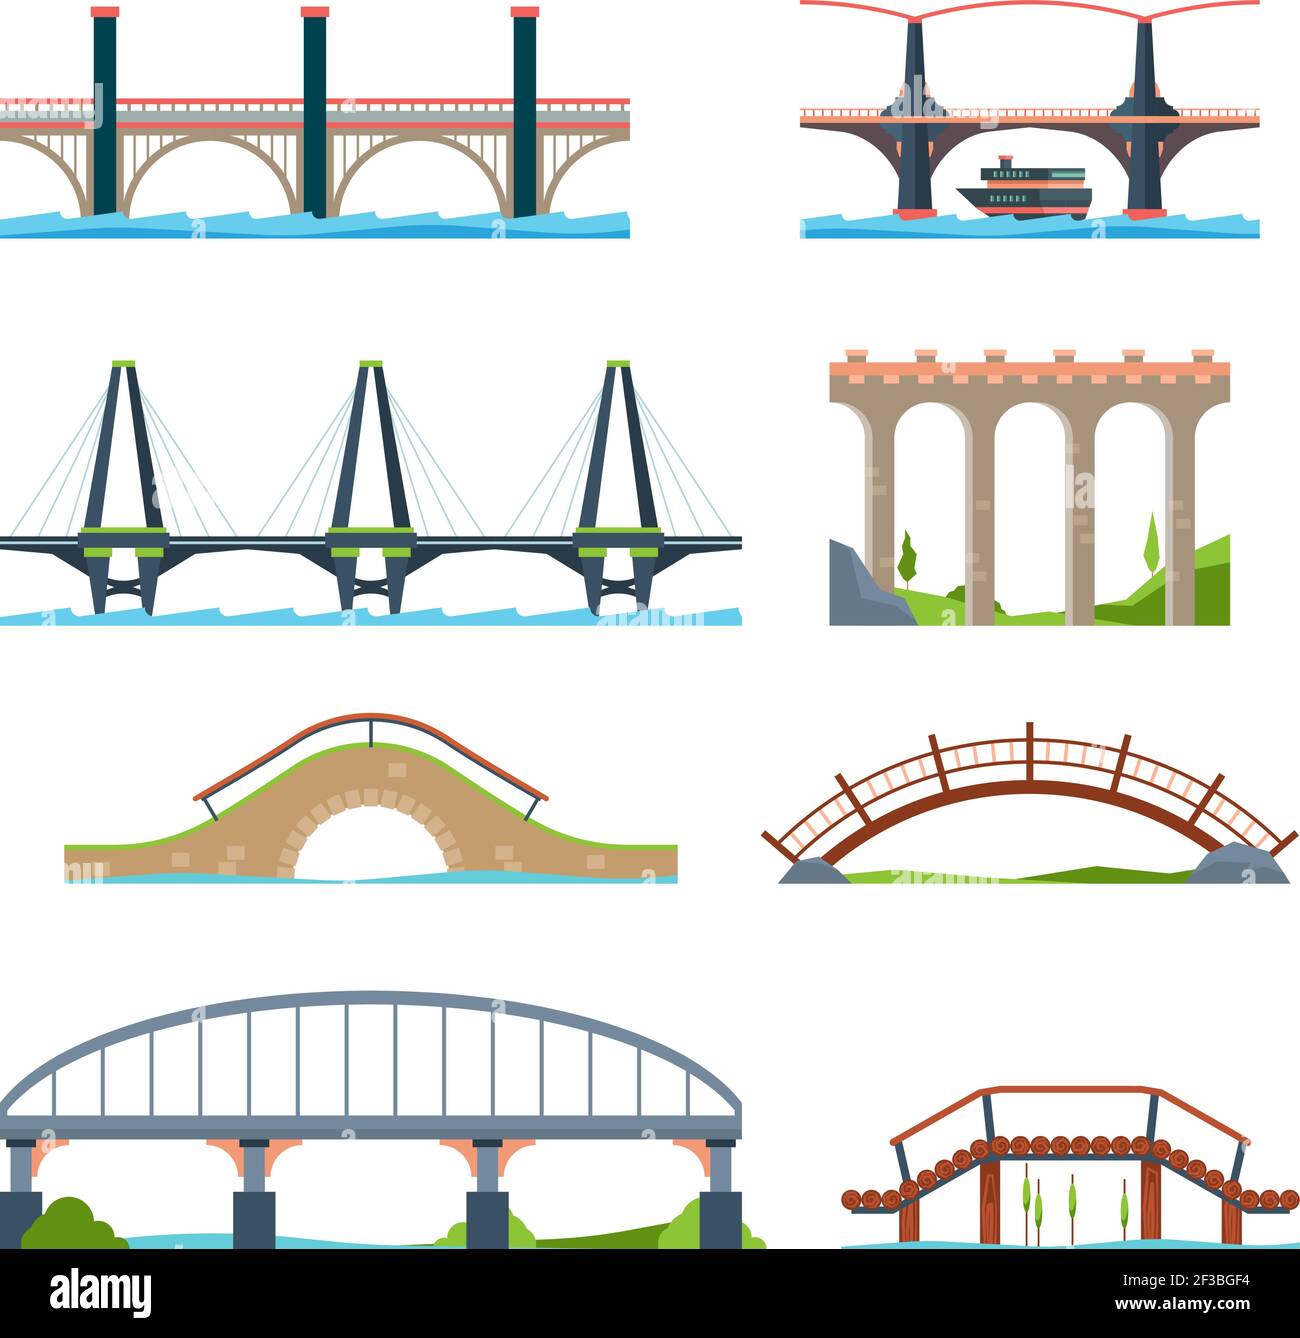 Brücken flach. Architektonische urbane Objekte Brücke mit Säule oder Aquädukt Strahl Vektorbilder Stock Vektor